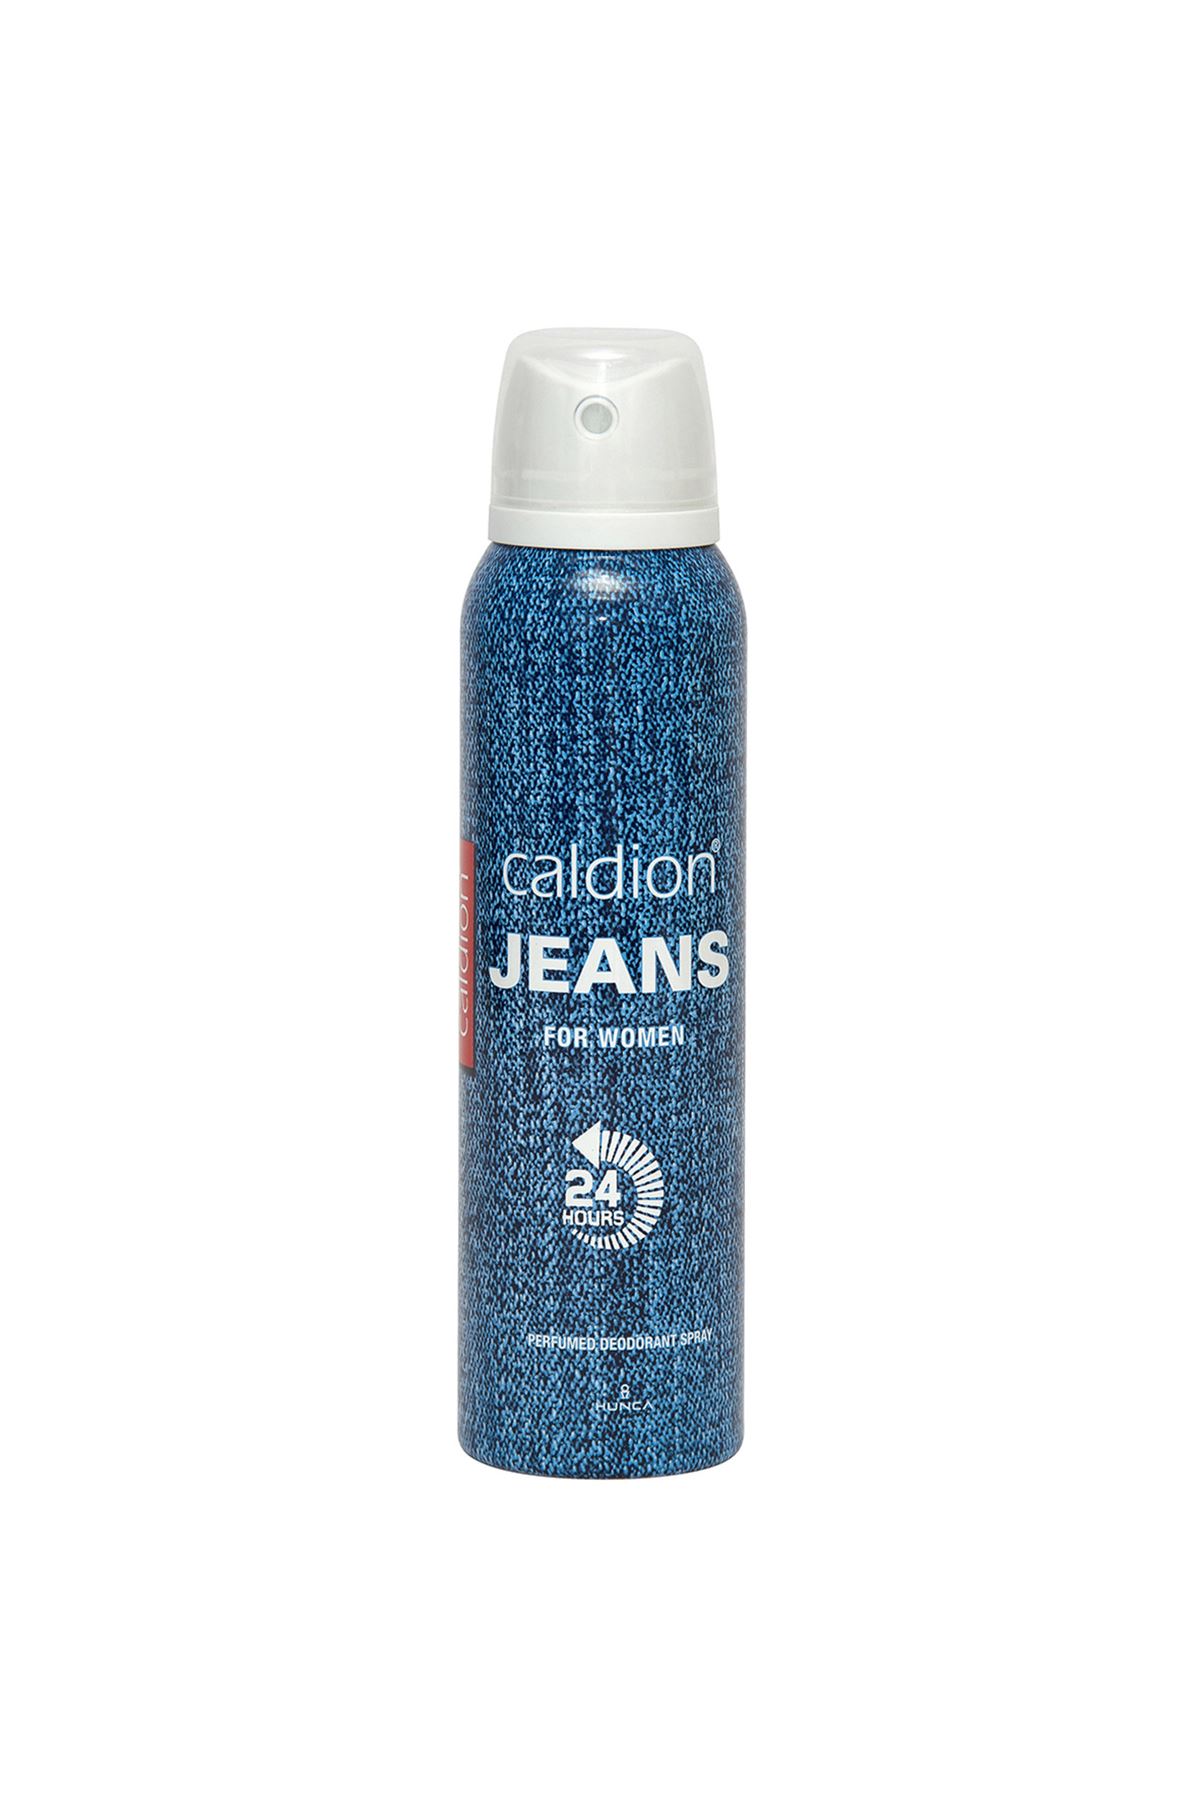 Caldion Jeans Kadın Deodorant